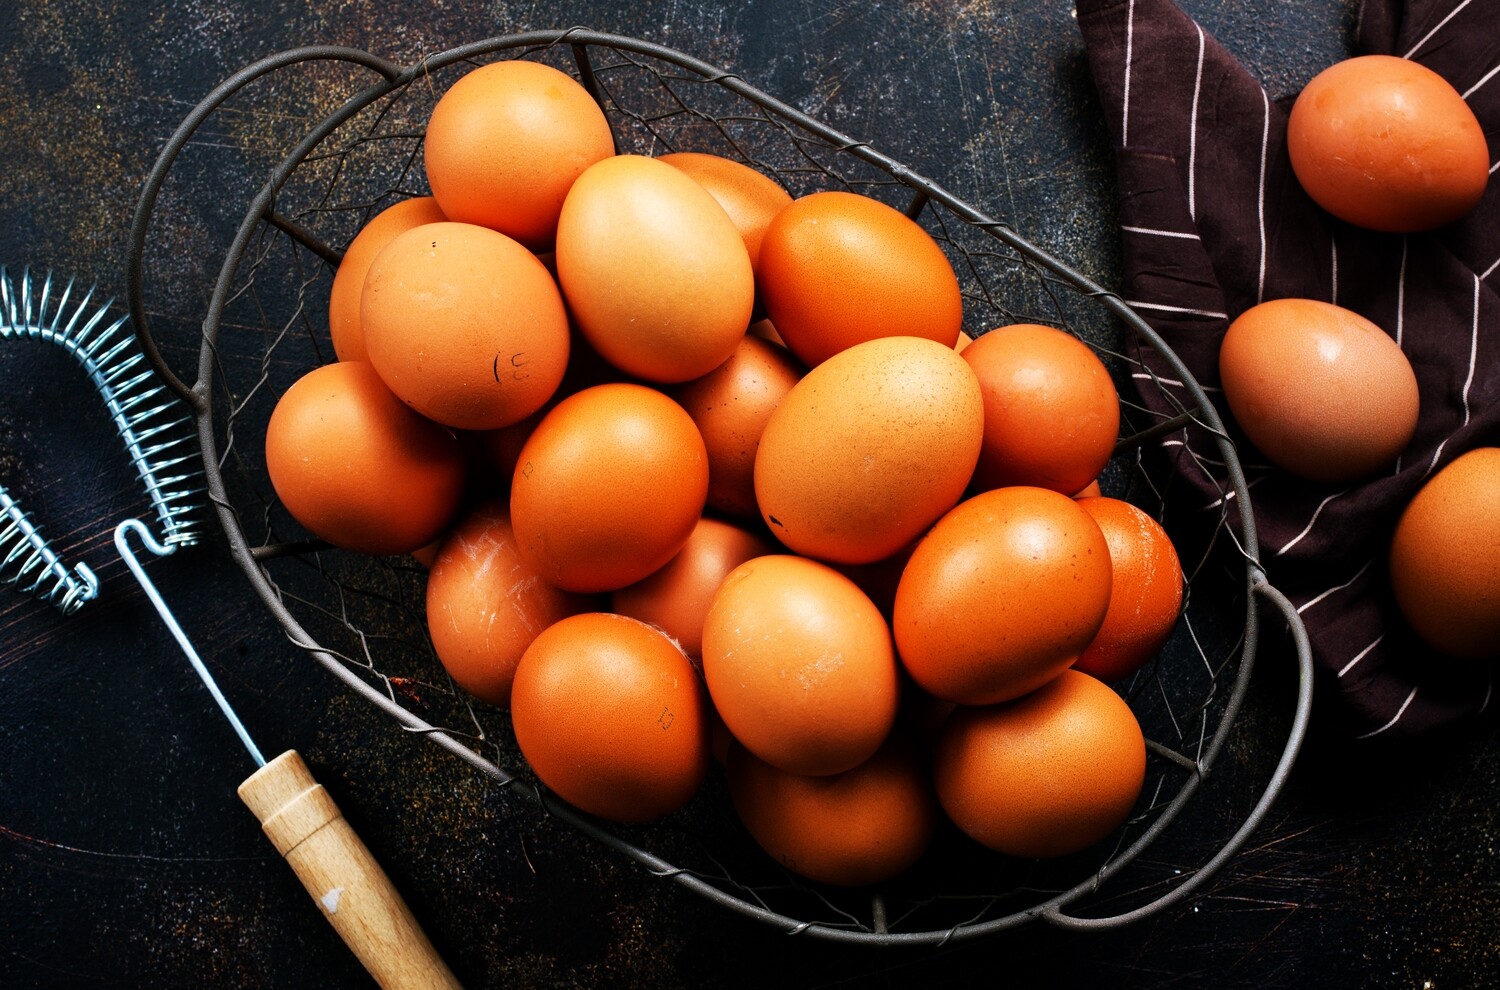 18 Medium Free Range Eggs